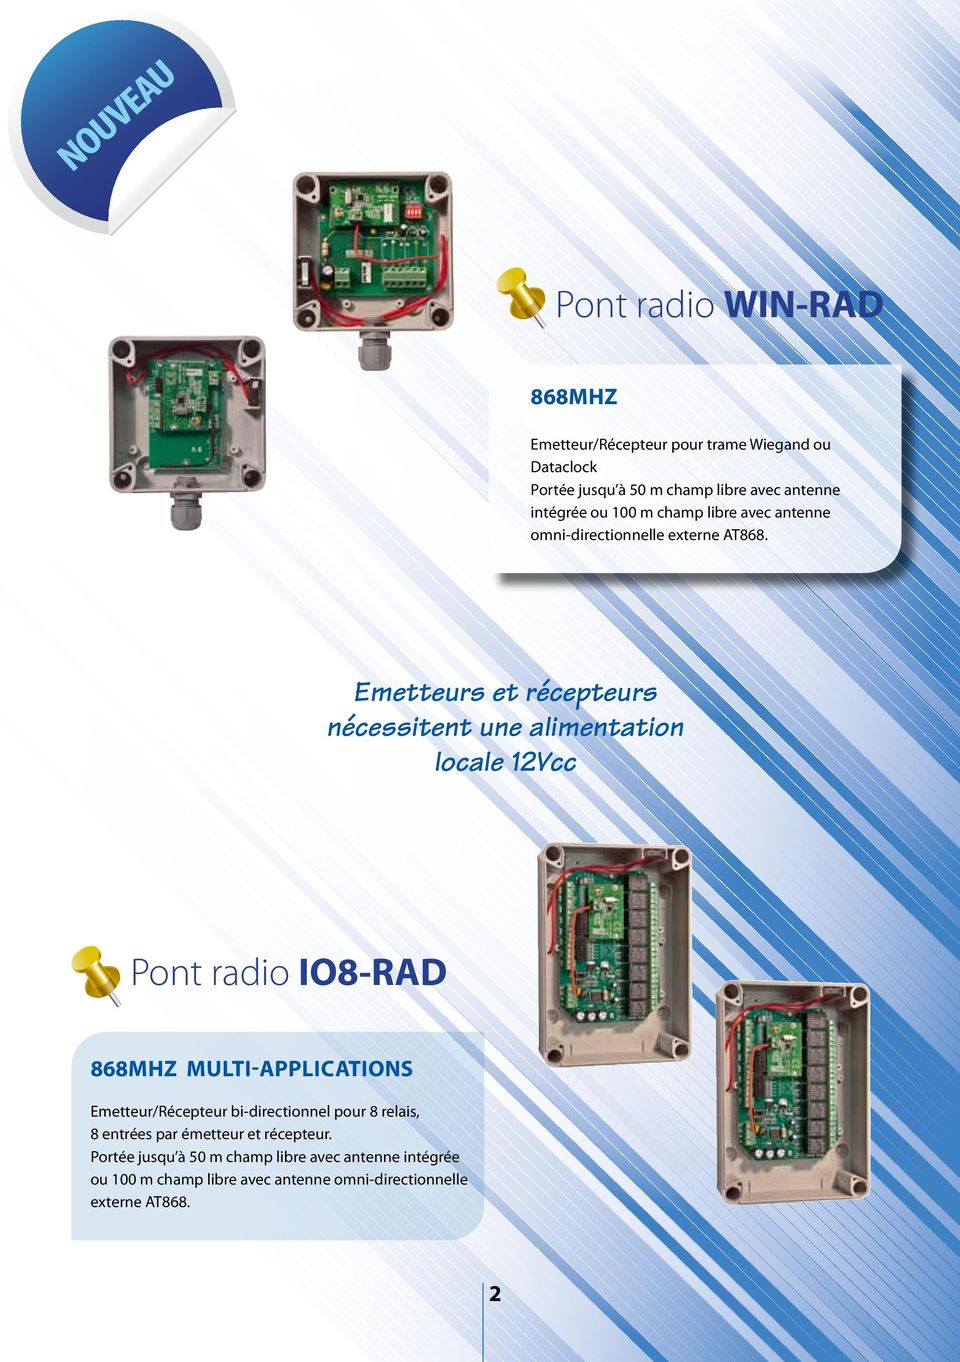 Emetteurs et récepteurs nécessitent une alimentation locale 12Vcc Pont radio IO8-RAD 868MHZ multi-applications Emetteur/Récepteur